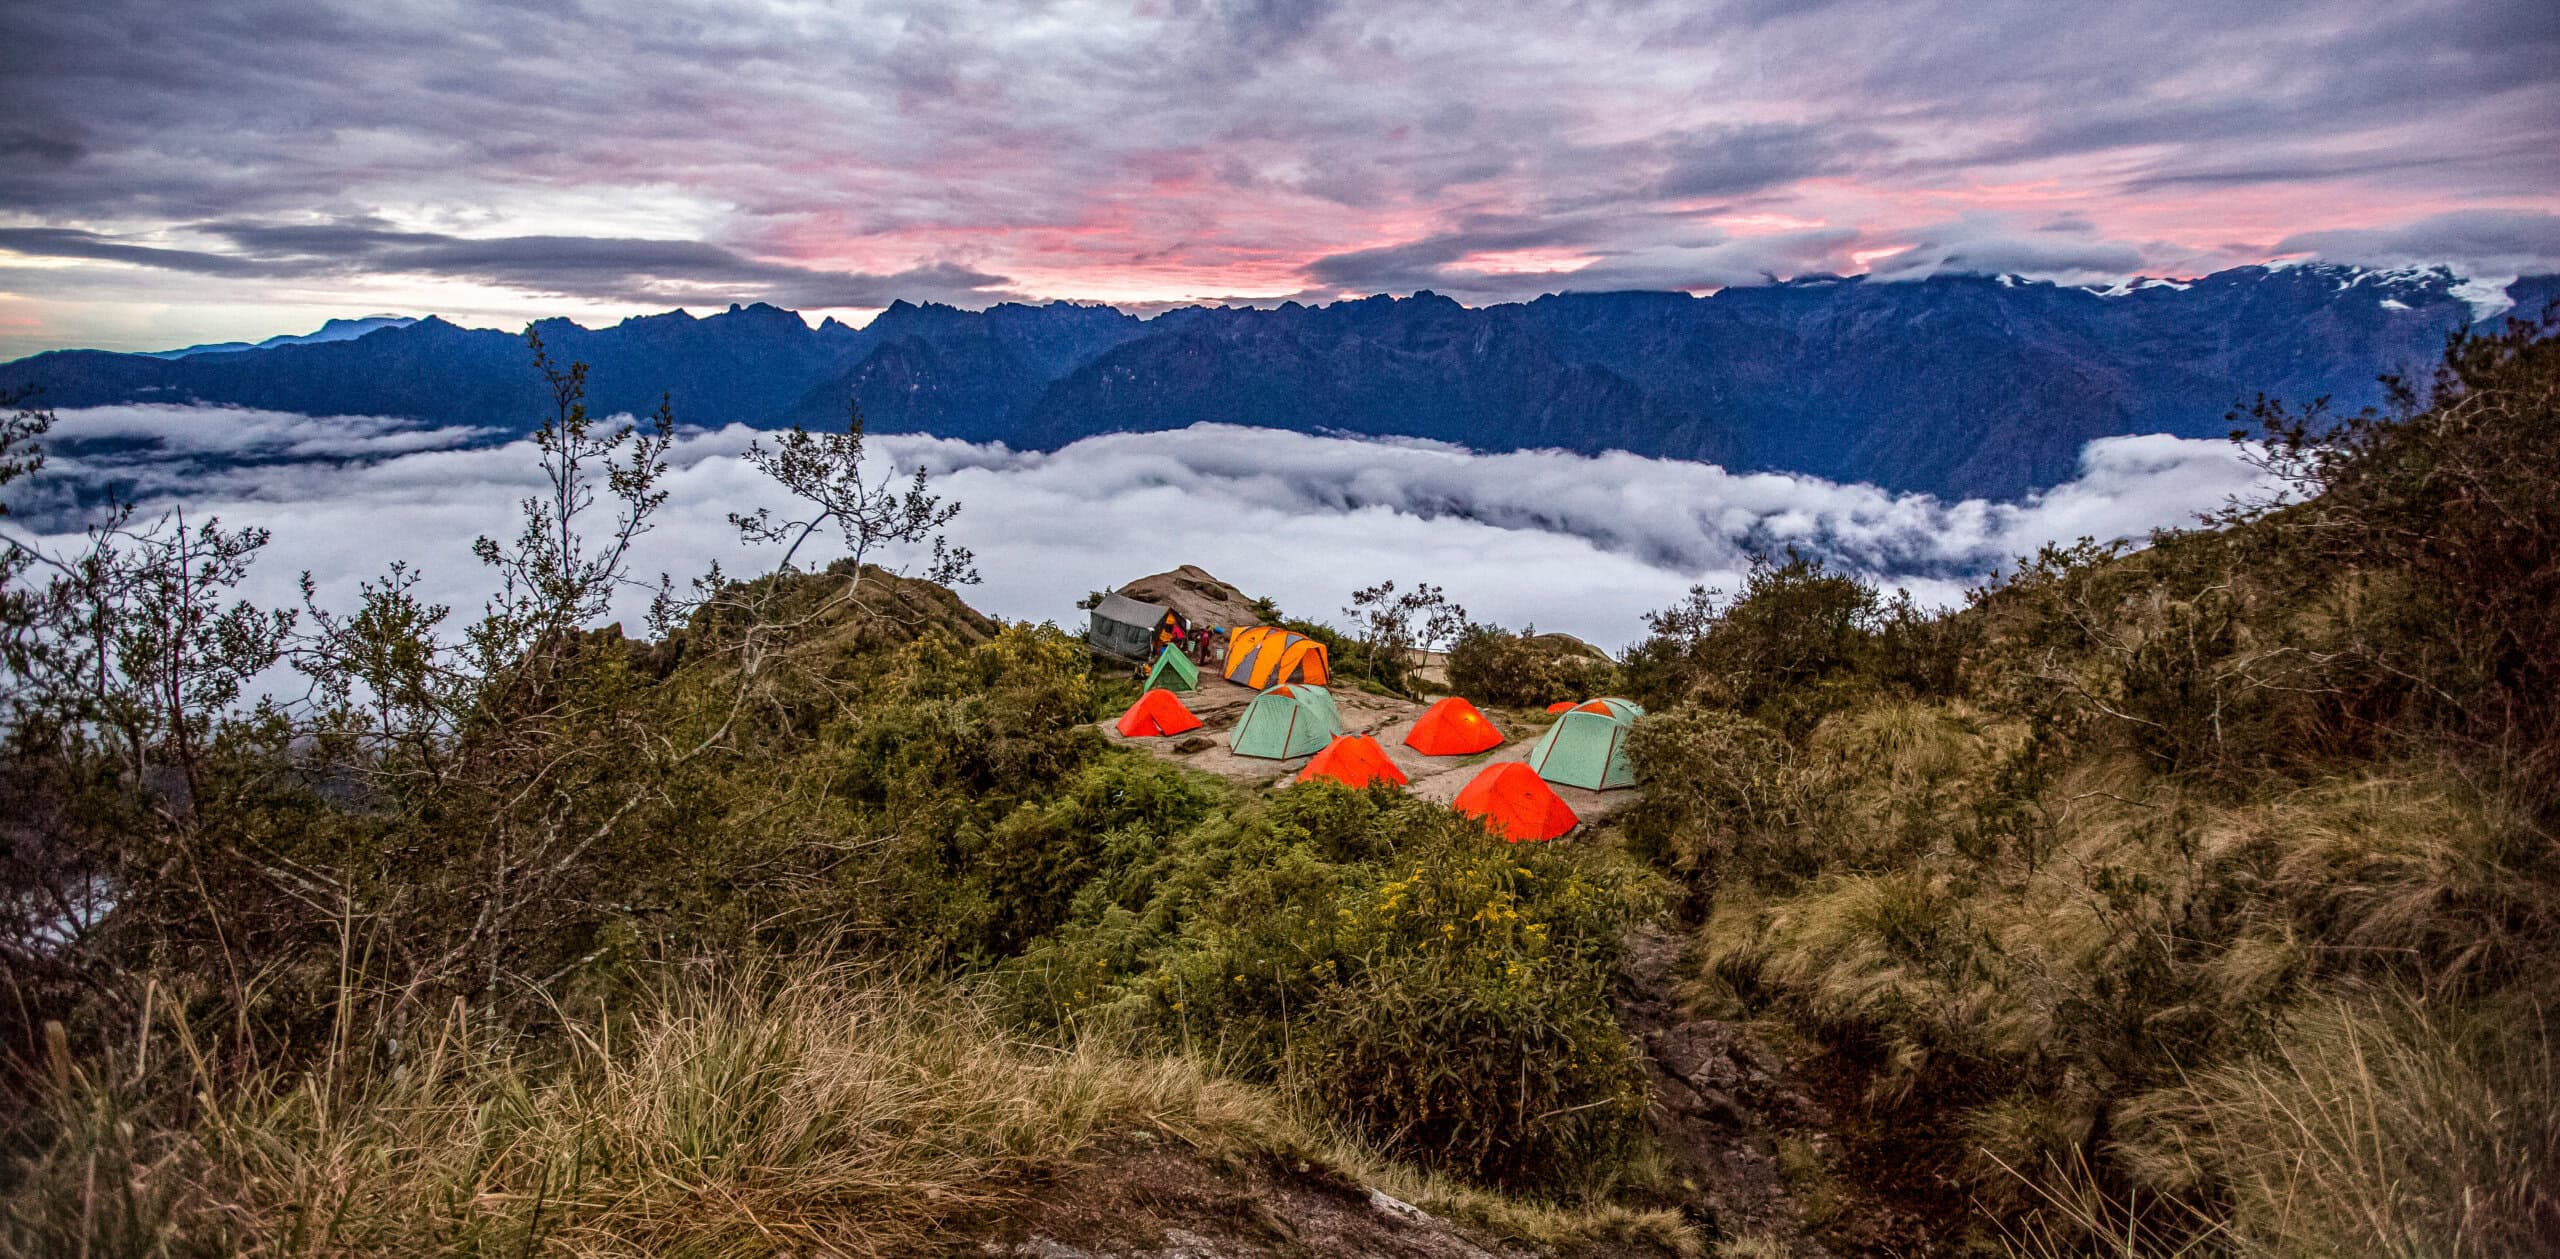 Inca Trail to Machu Picchu Hiking Tour | Guided Trekking in Peru